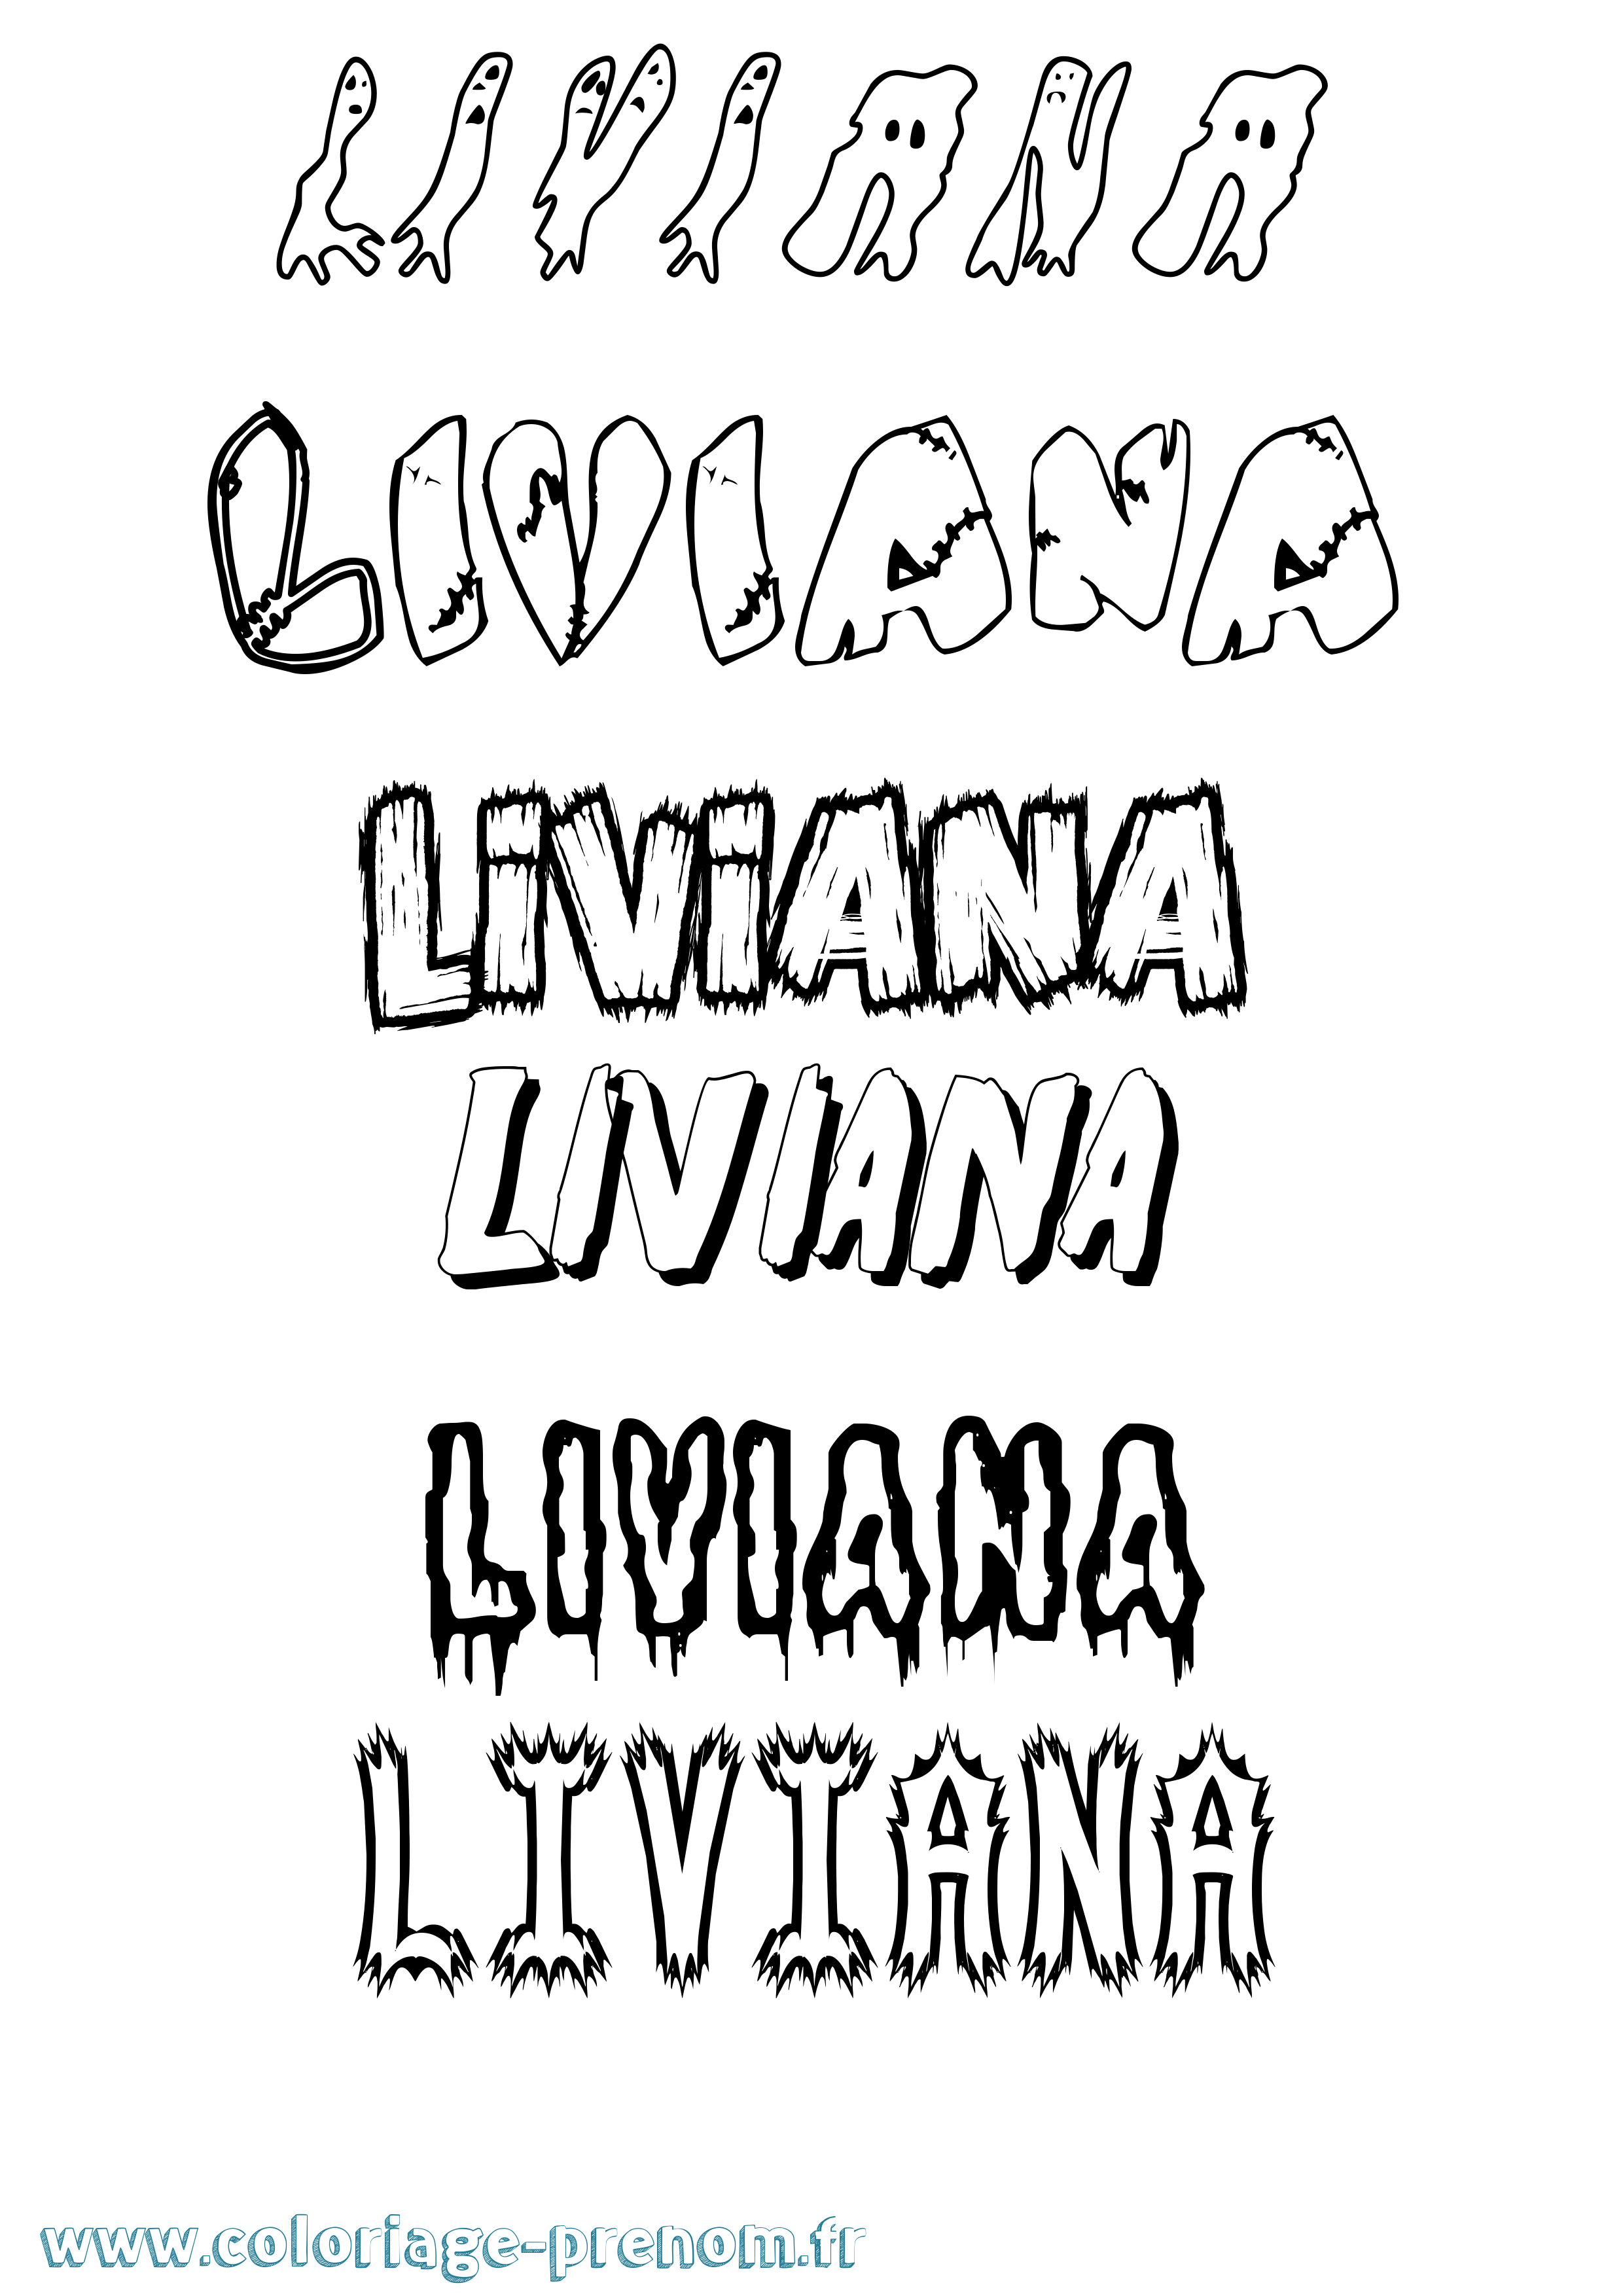 Coloriage prénom Liviana Frisson